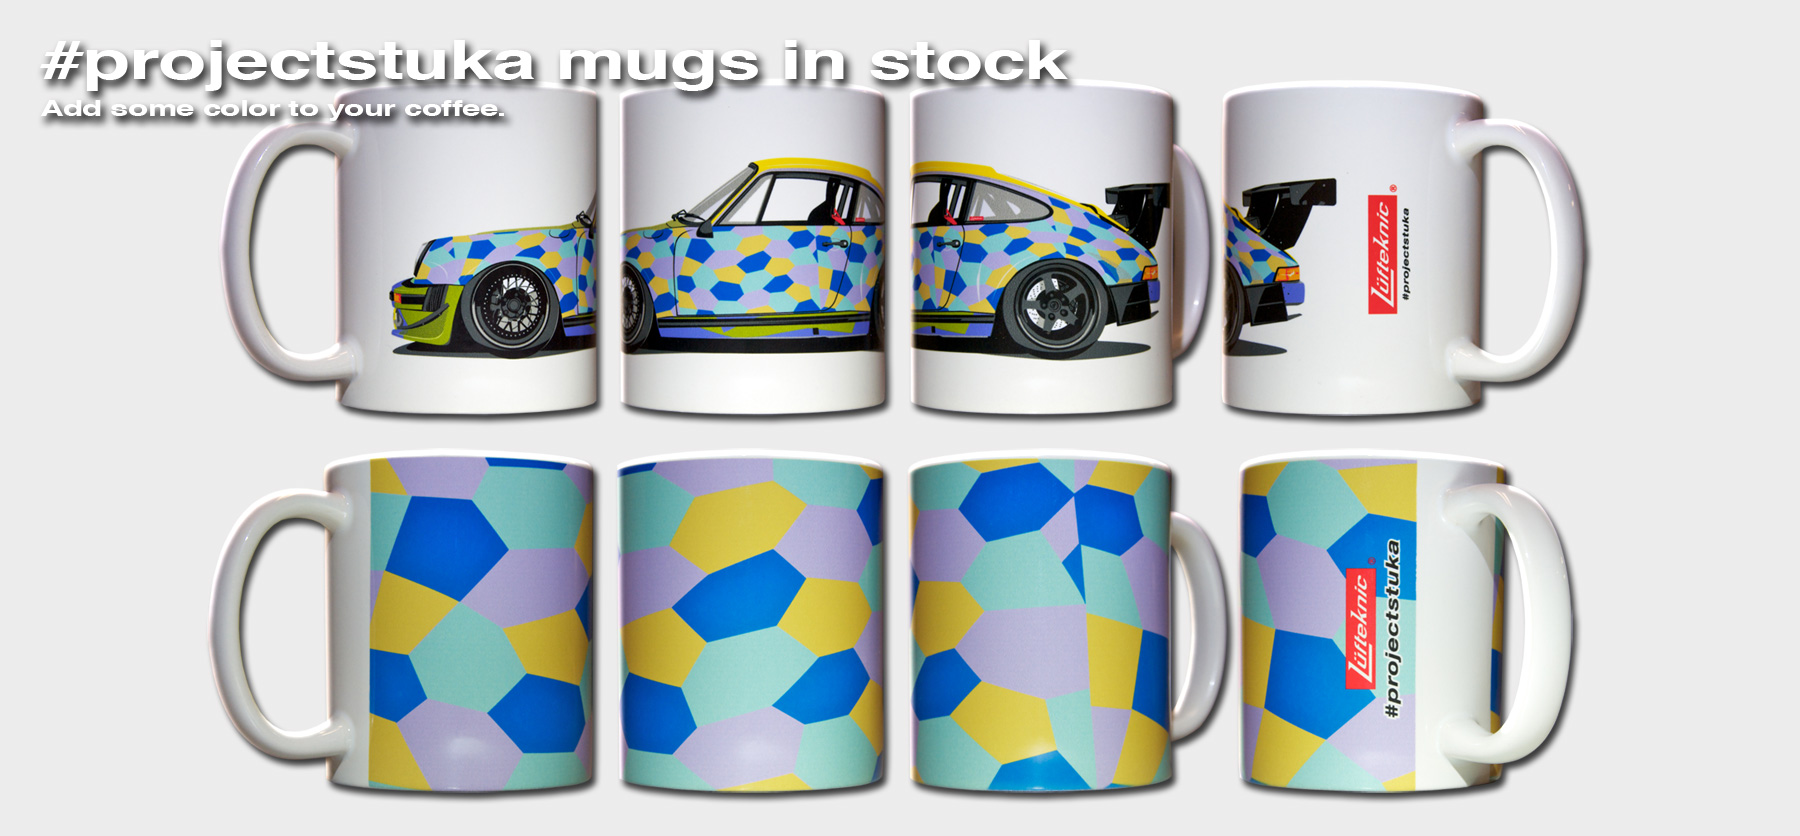 #projectstuka mug promotion image